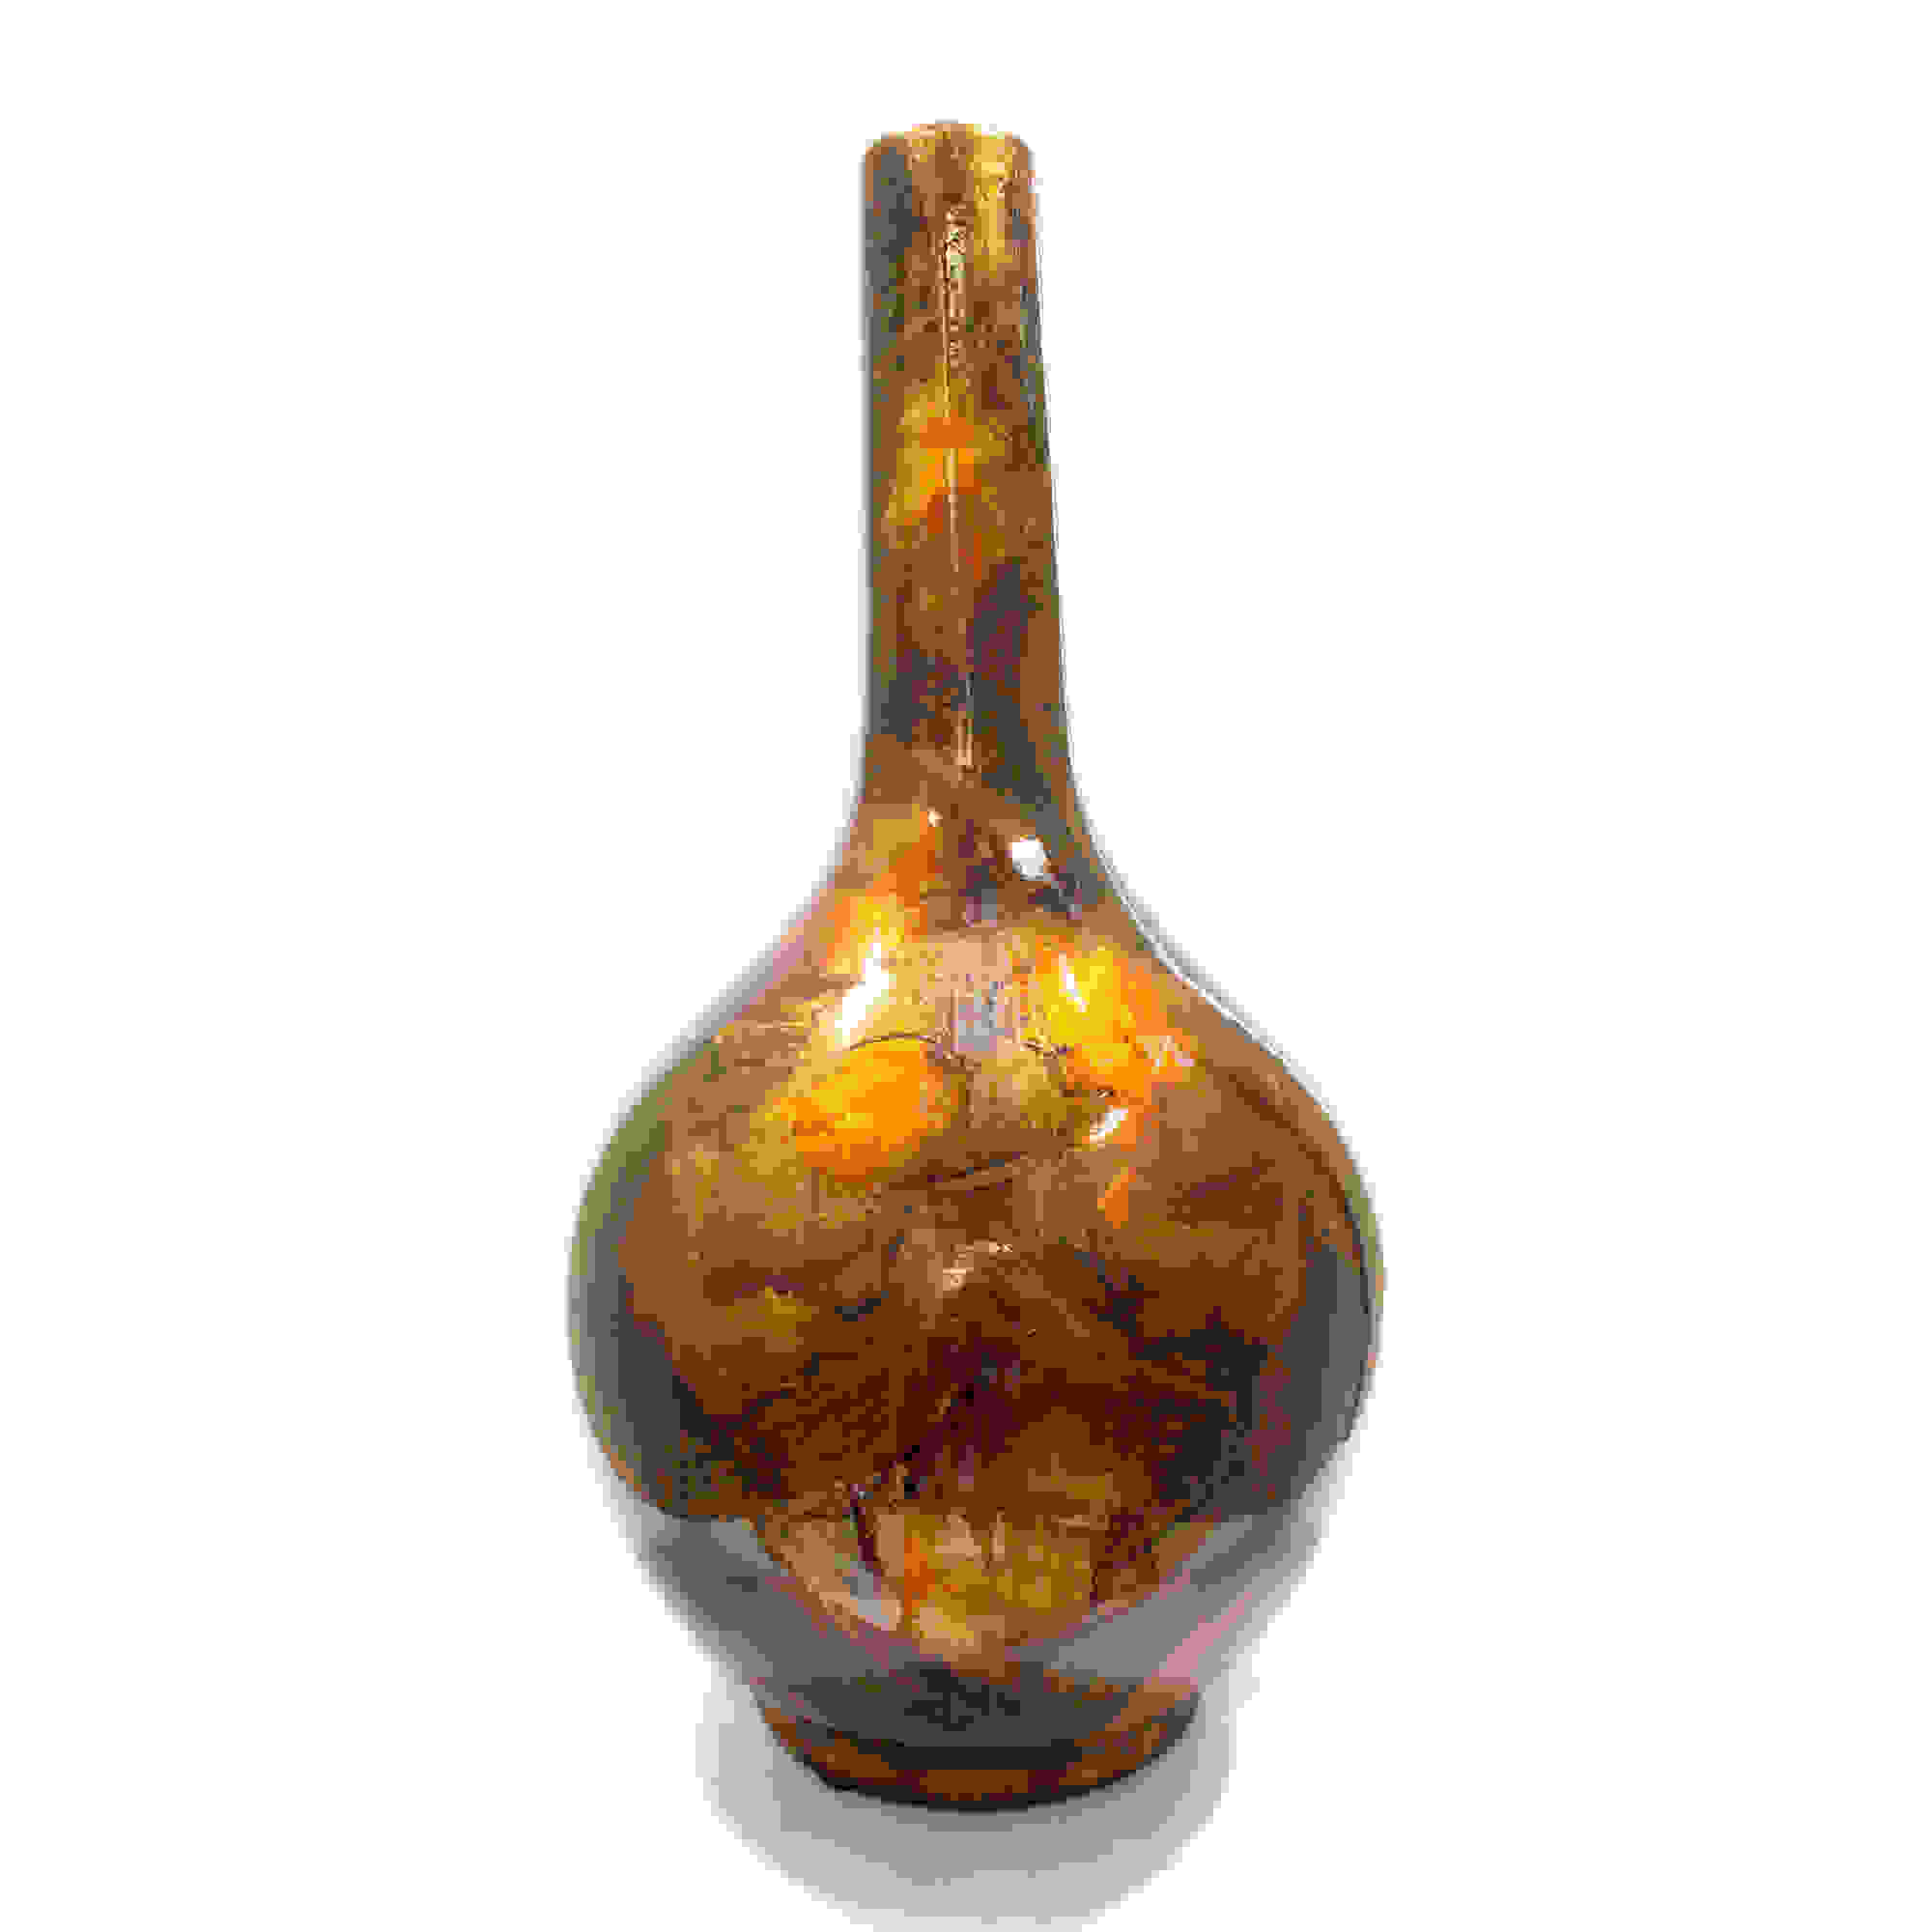 5.5" X 5.5" X 24" Turquoise Copper and Bronze Ceramic Floor Vase